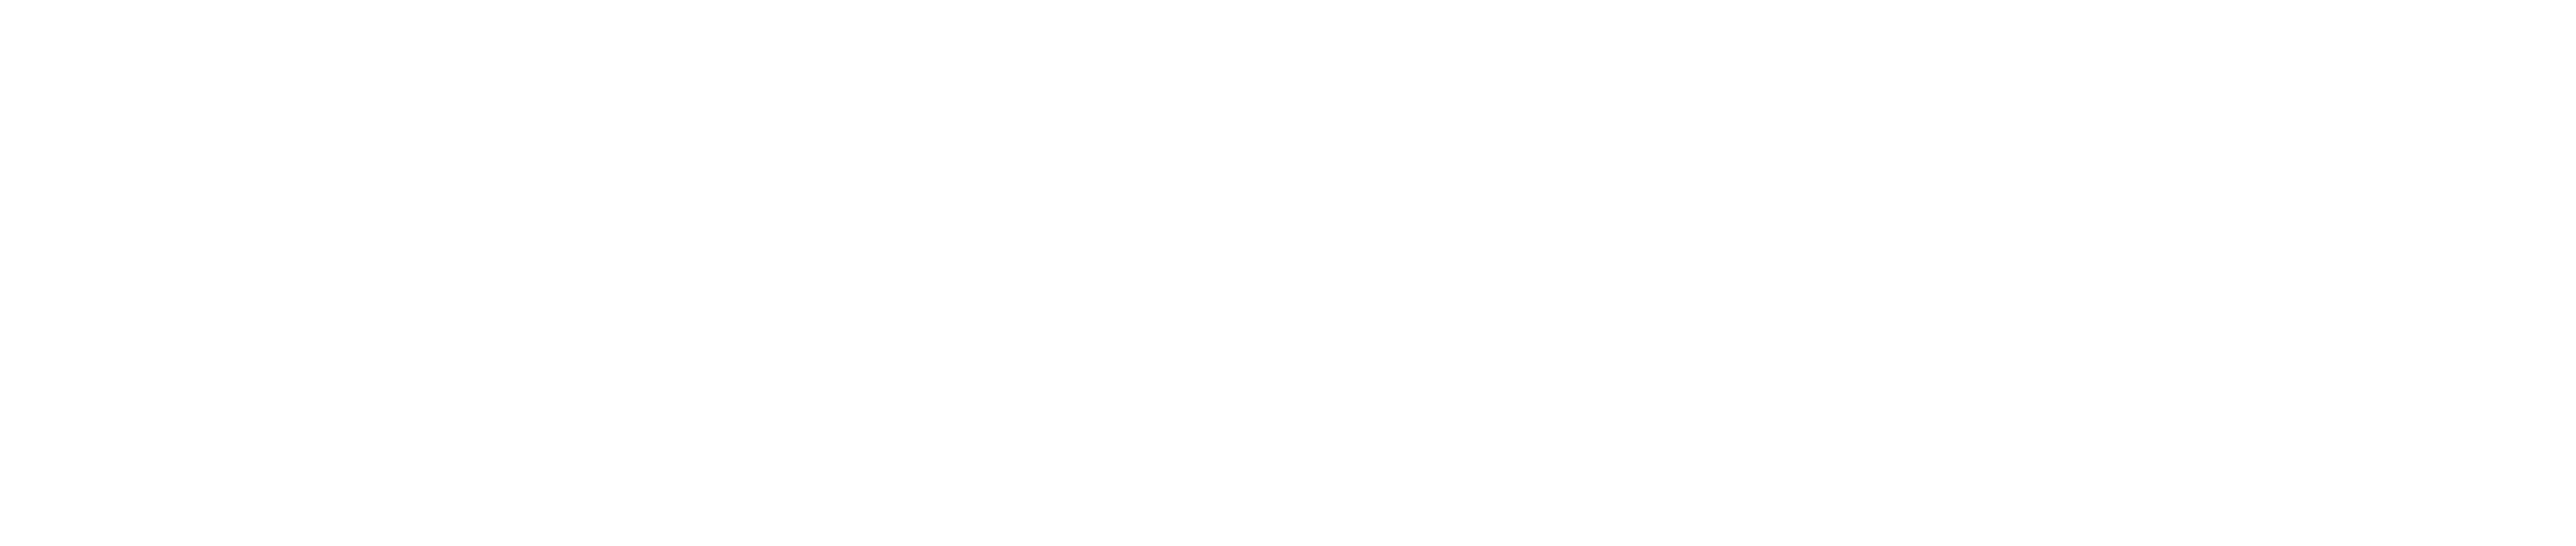 Trade Maestro 